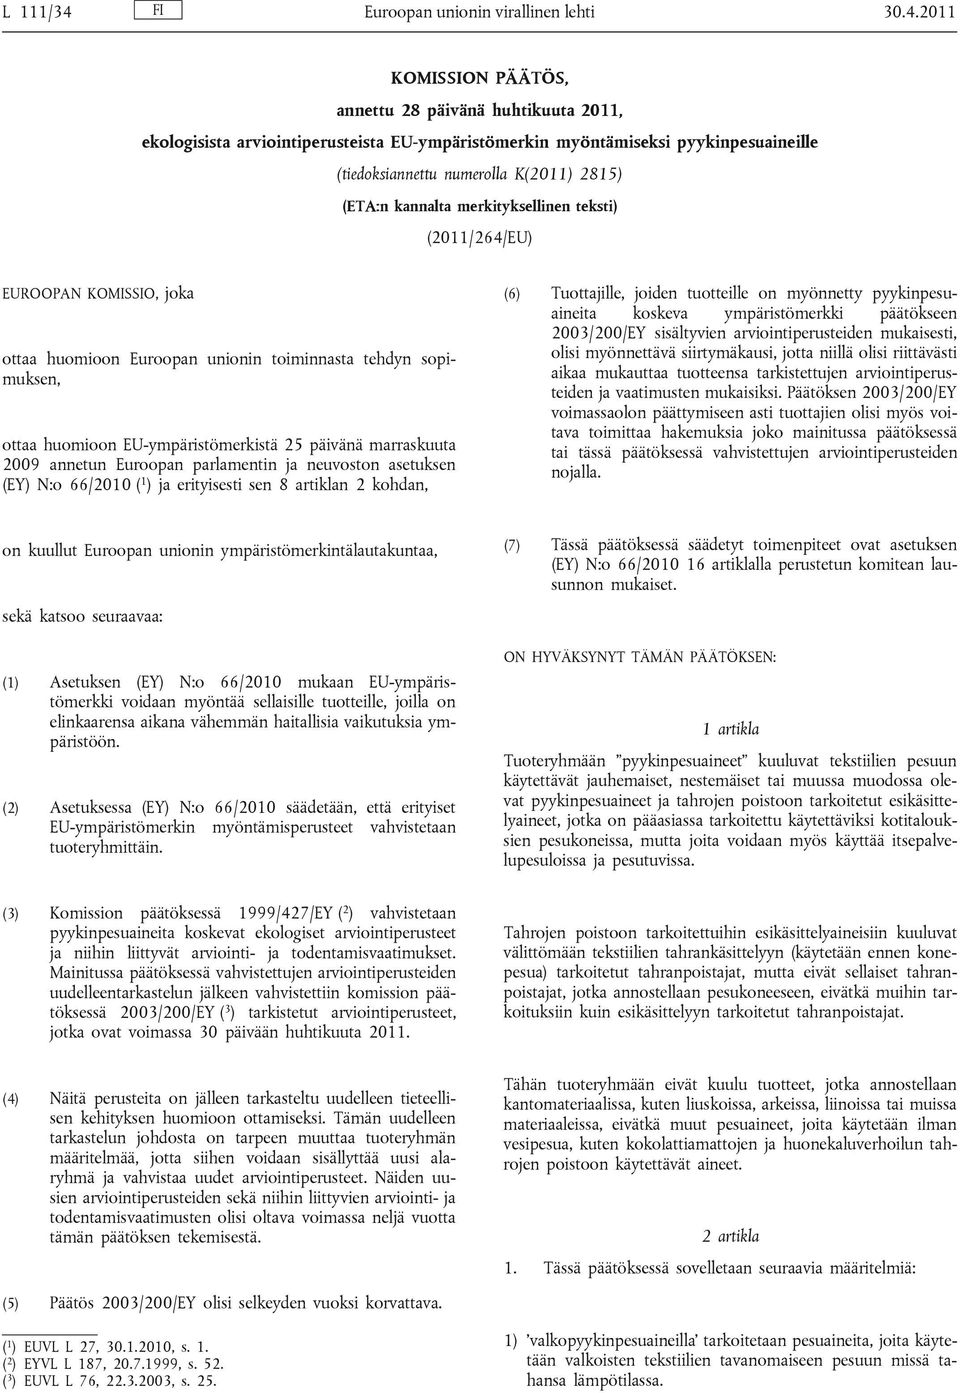 2011 KOMISSION PÄÄTÖS, annettu 28 päivänä huhtikuuta 2011, ekologisista arviointiperusteista EU-ympäristömerkin myöntämiseksi pyykinpesuaineille (tiedoksiannettu numerolla K(2011) 2815) (ETA:n